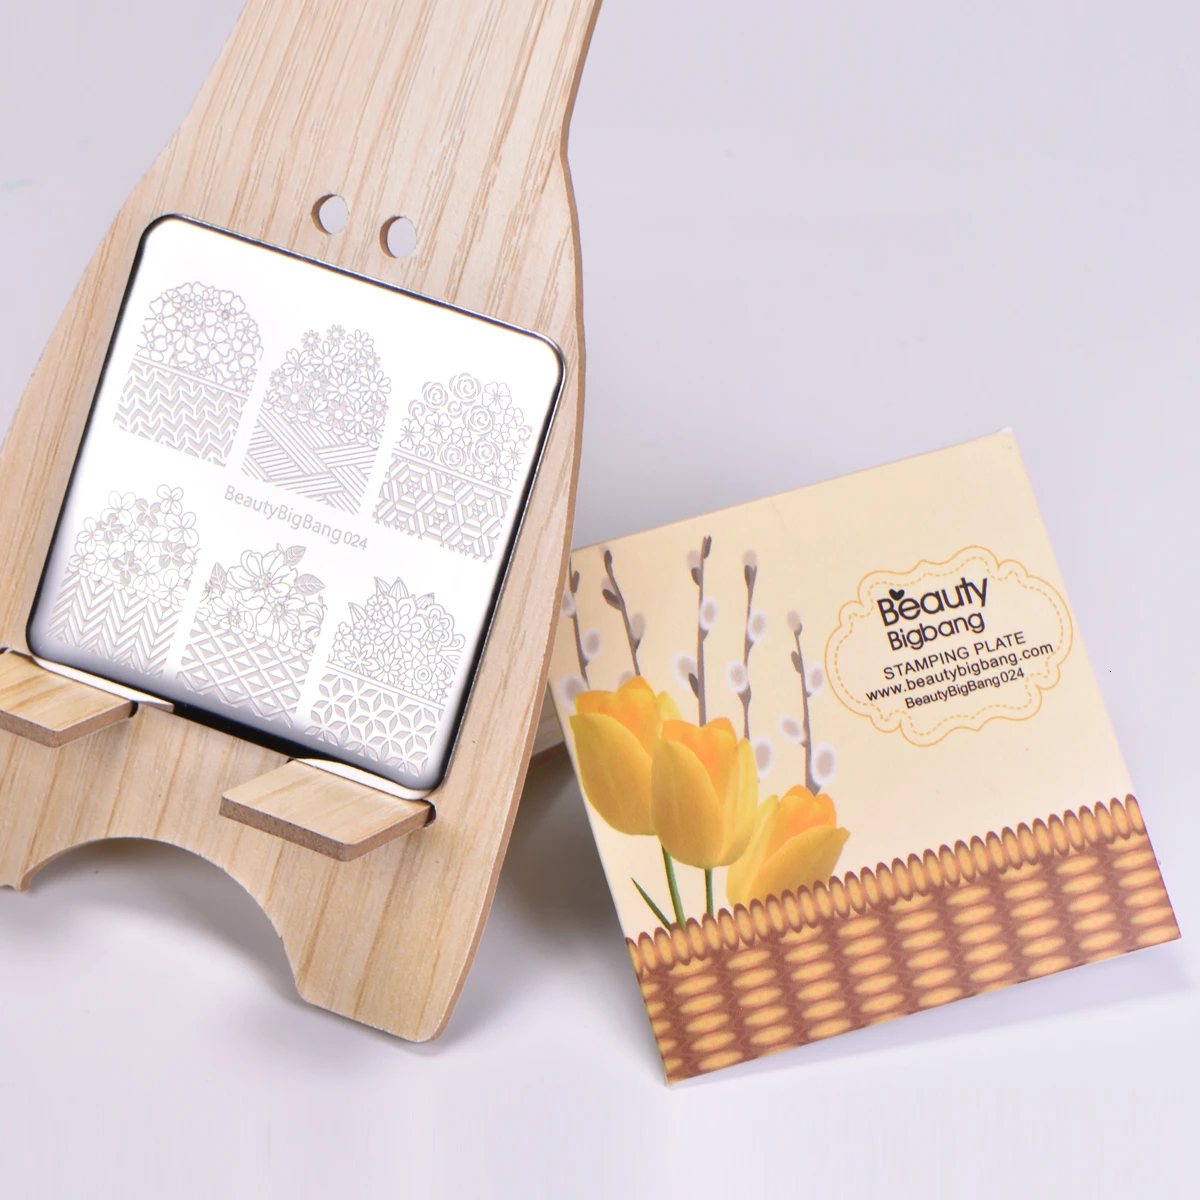 Beautybigbang 30 шт. набор штамповочных пластин для дизайна ногтей различные квадратные шаблоны для мешков штамповки карт Цветочные штамповки для ногтей набор шаблонов